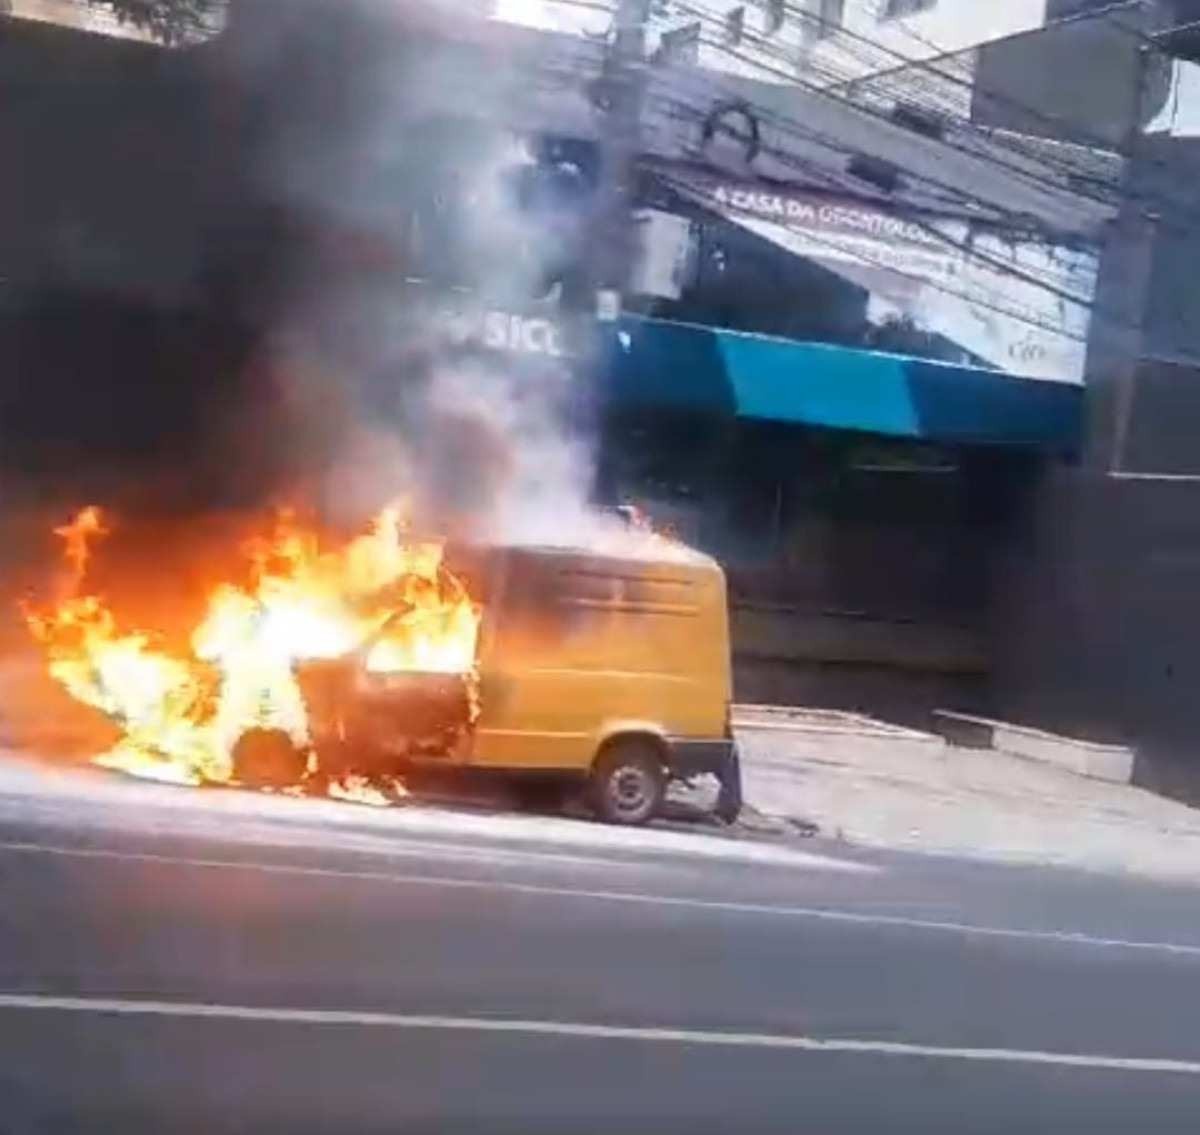 Automóvel pega fogo na Avenida do Contorno, em Belo Horizonte